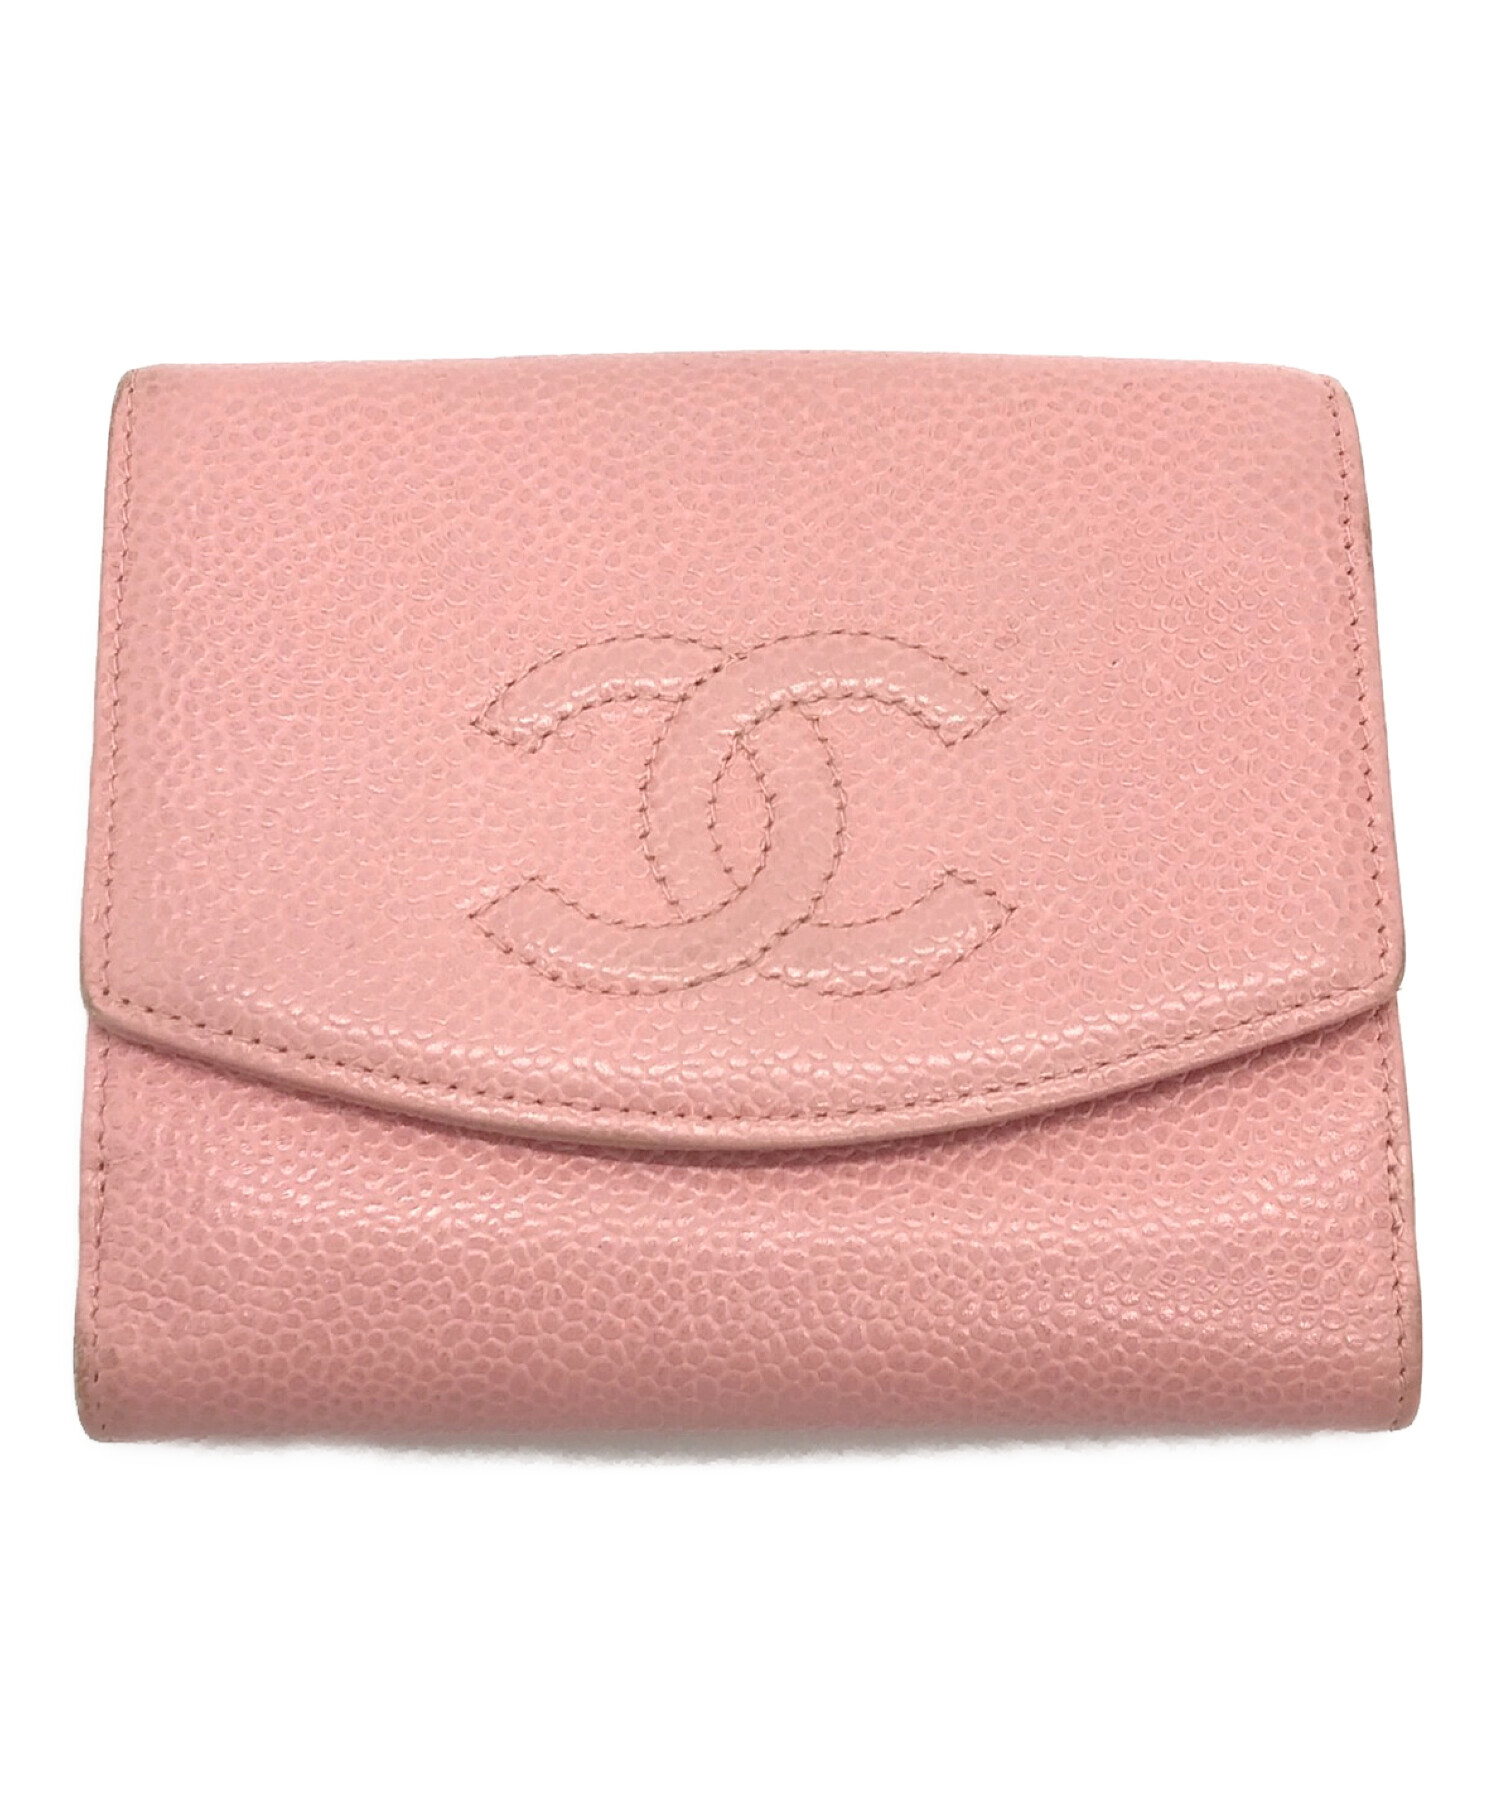 ◆売約済◆【美品】CHANEL シャネル キャビアスキン 二つ折り財布 ピンク